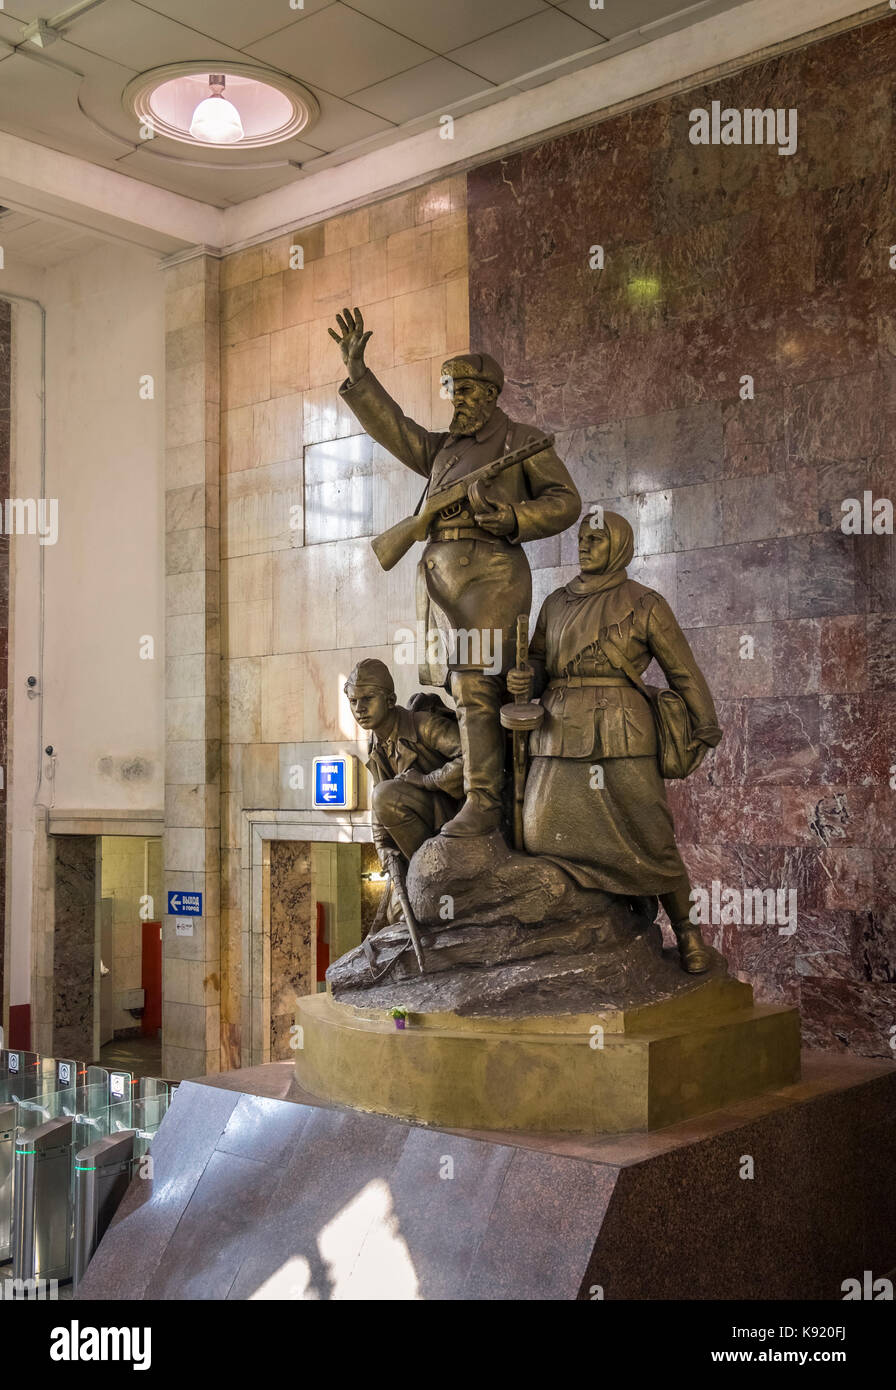 Sowjetischen kommunistischen Skulptur "Partisanen" in der Lobby des U-Bahnhof Partizanskaya angezeigt, Moskau, Russland. Stockfoto